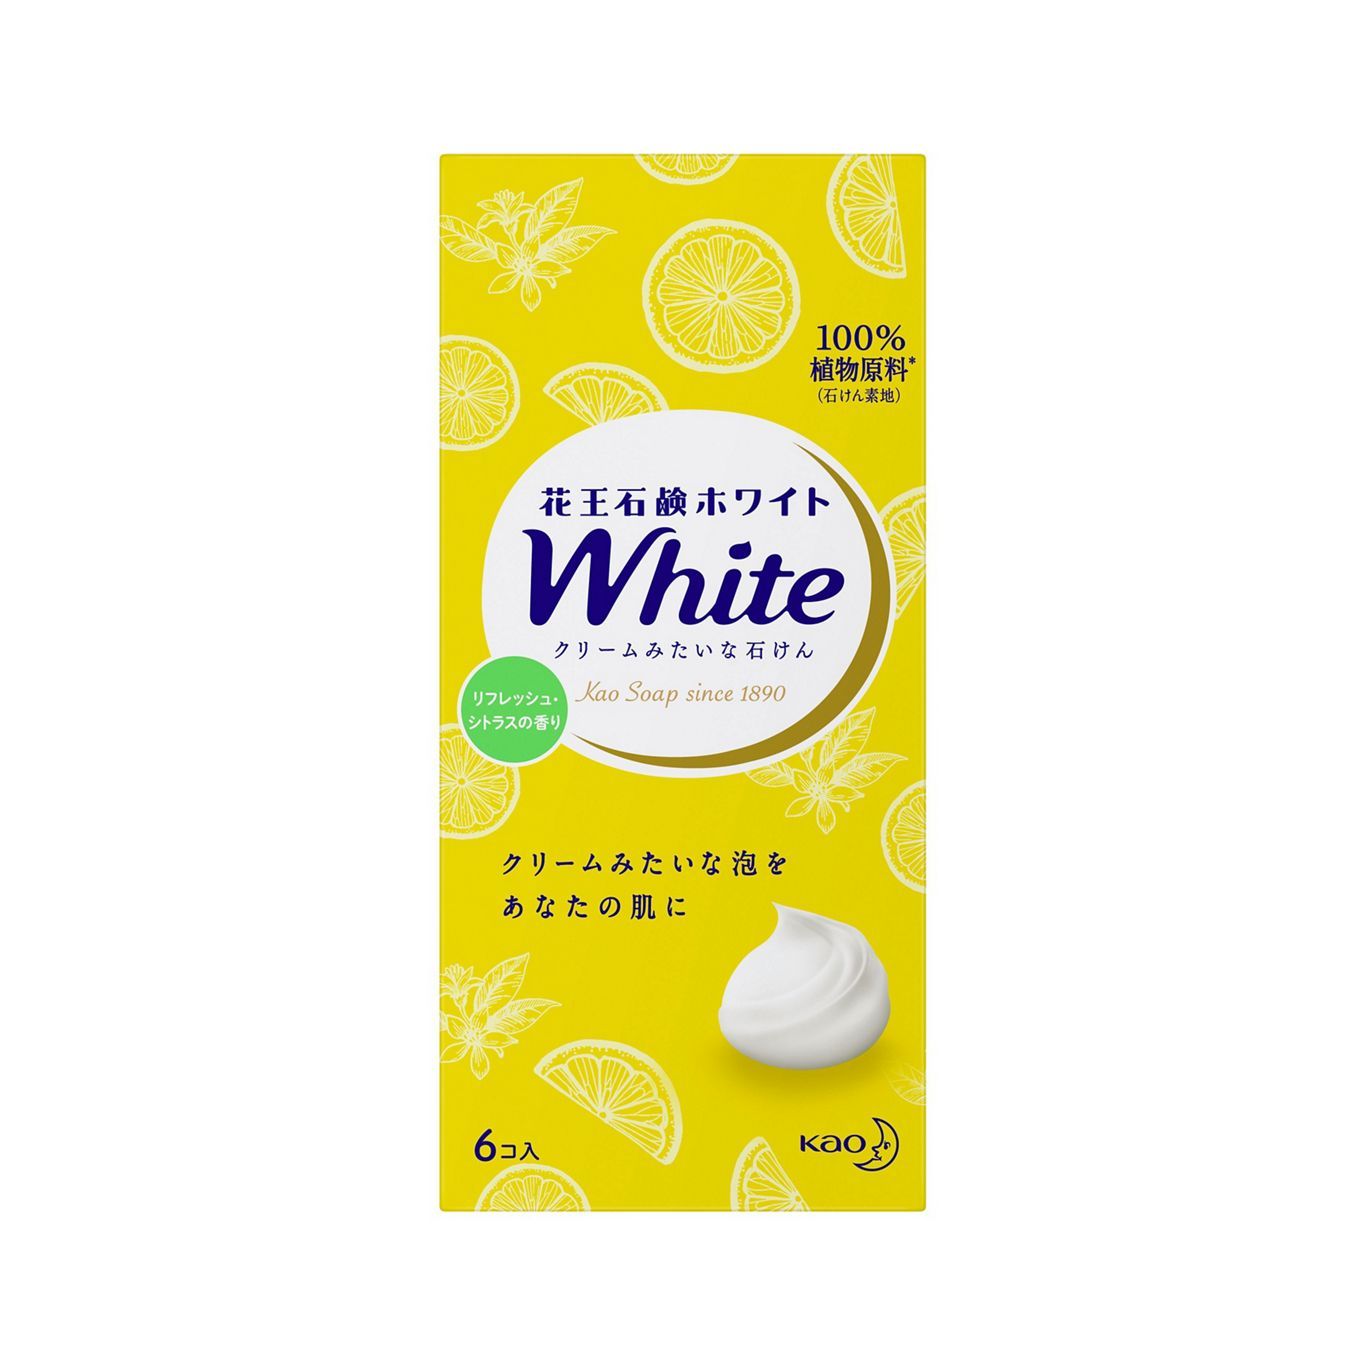 Туалетное мыло Kao White натуральное увлажняющее сочный аромат лимона 85 г 6 шт